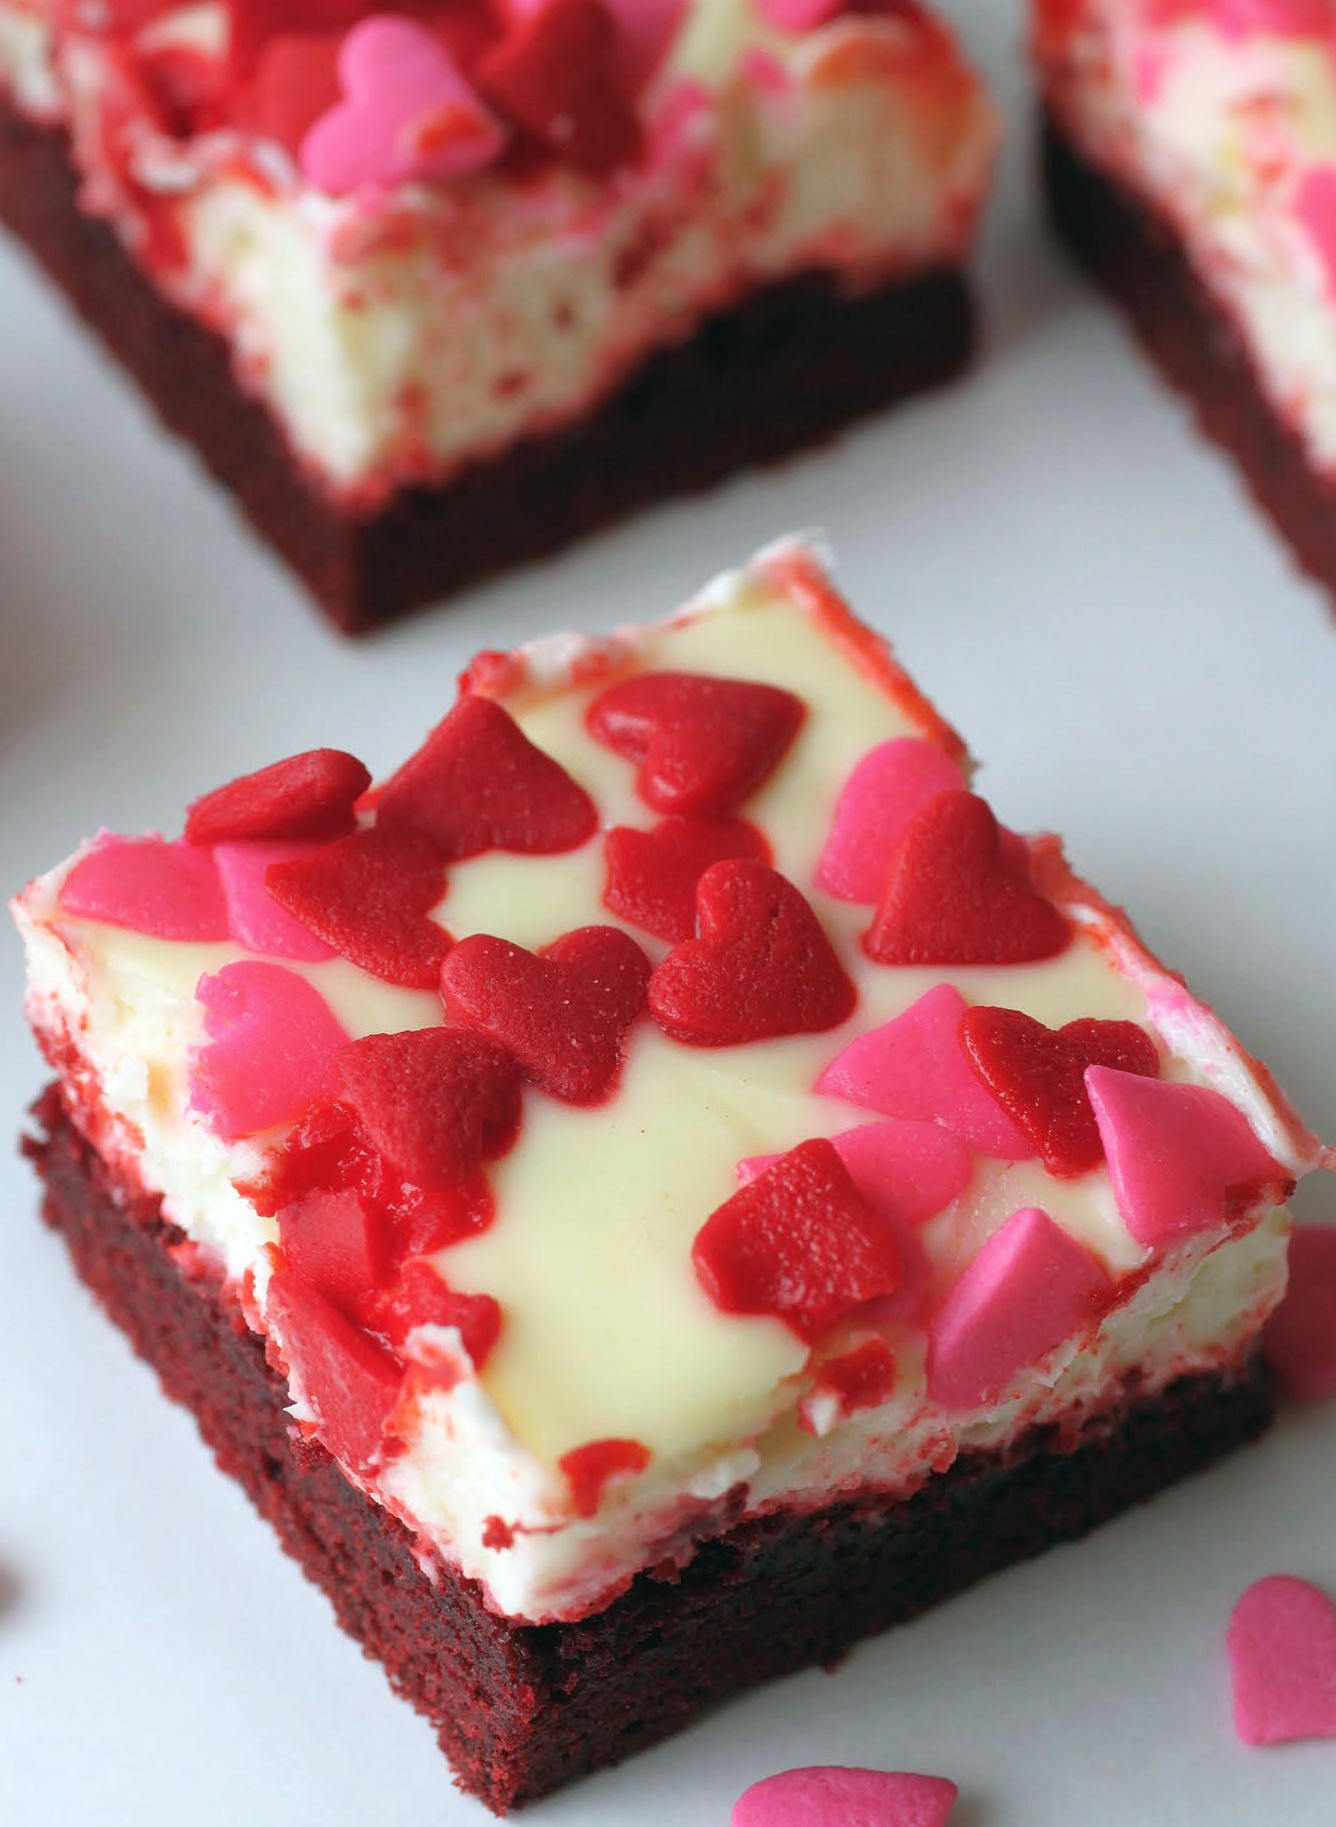 Red Velvet Cheesecake Bars